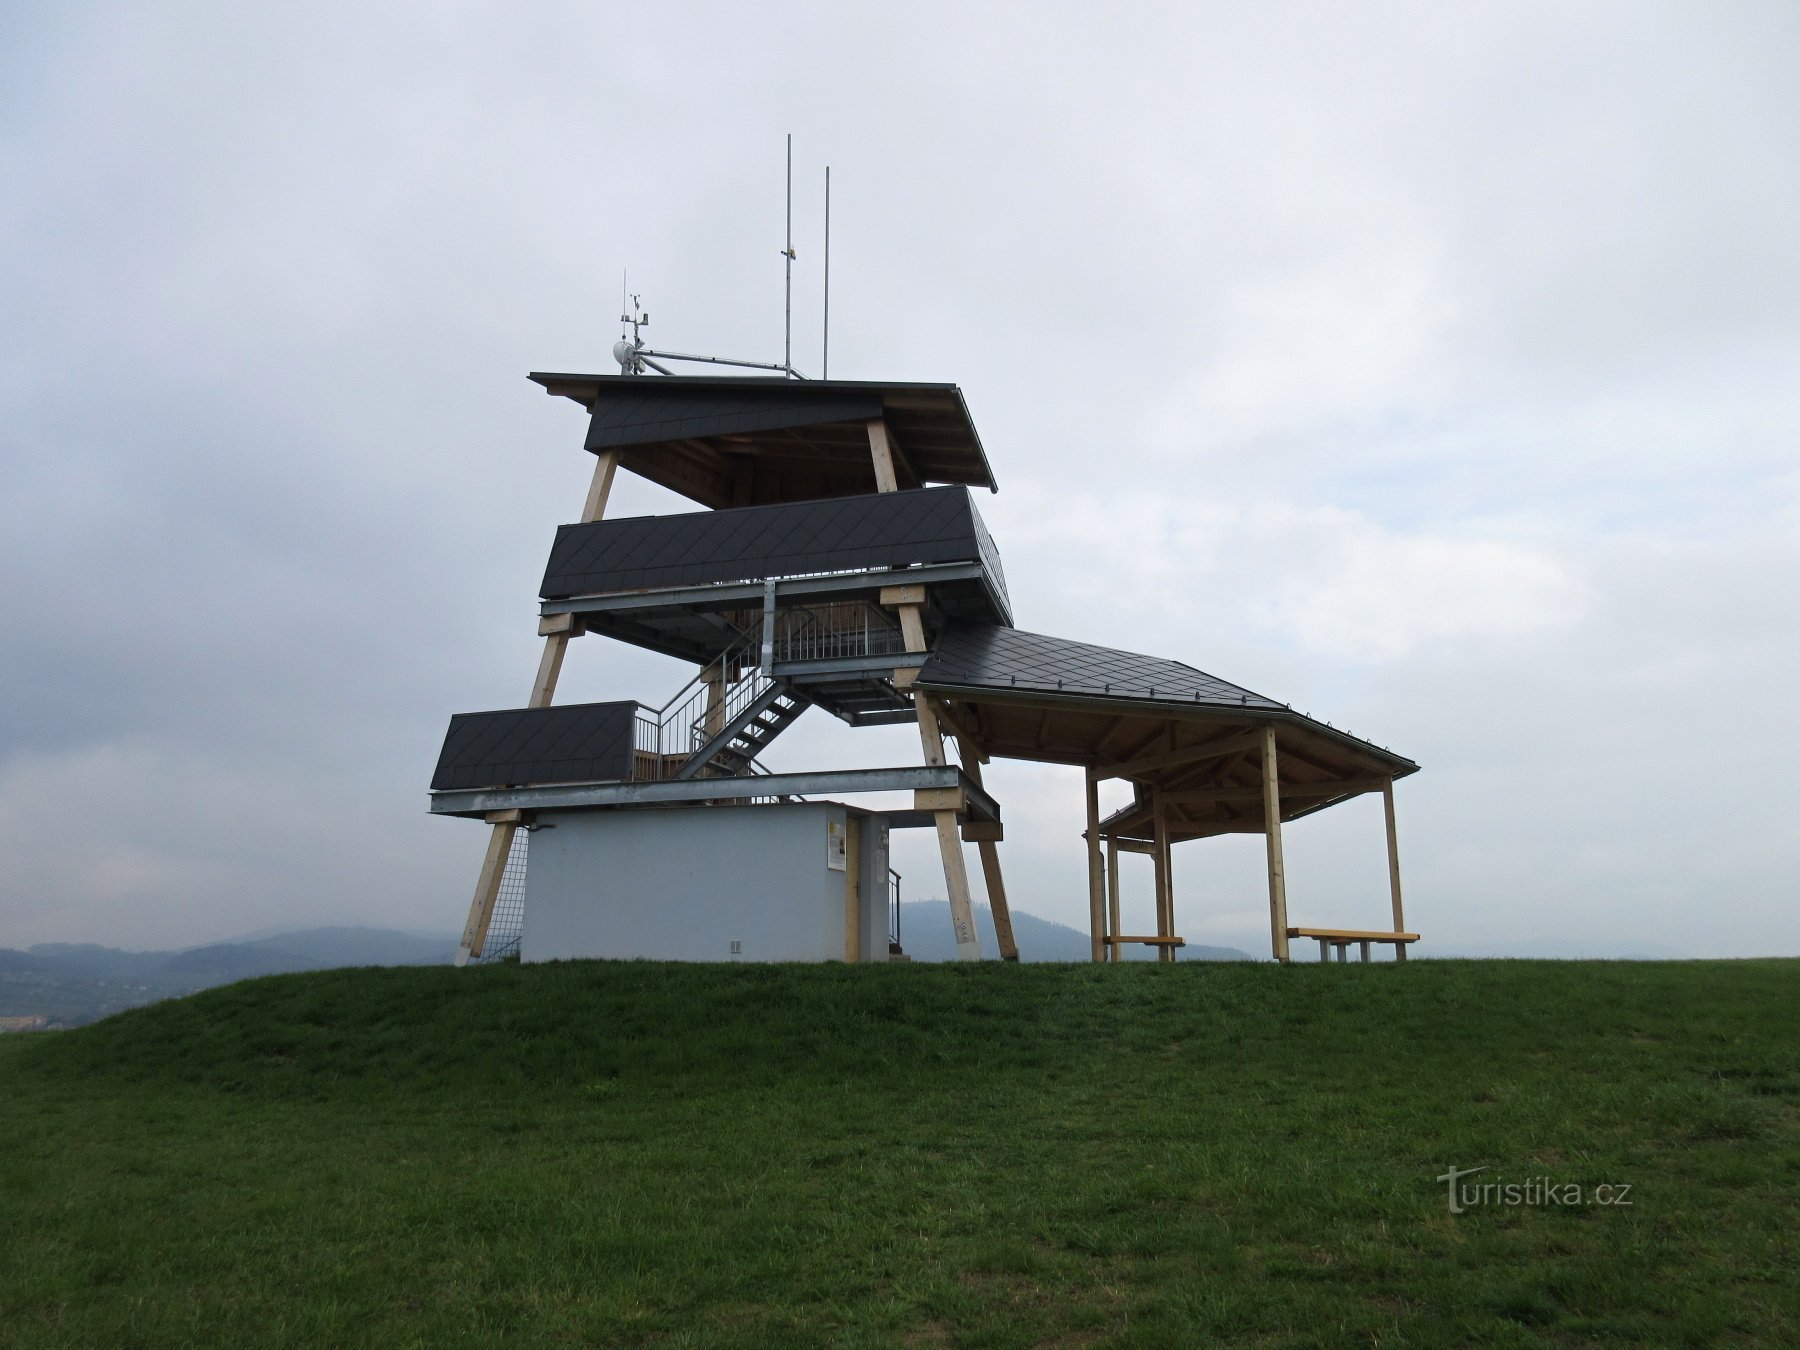 Χωριό Bludov, πύργος παρατήρησης Brusná και εκπαιδευτικό μονοπάτι Bludovská straň